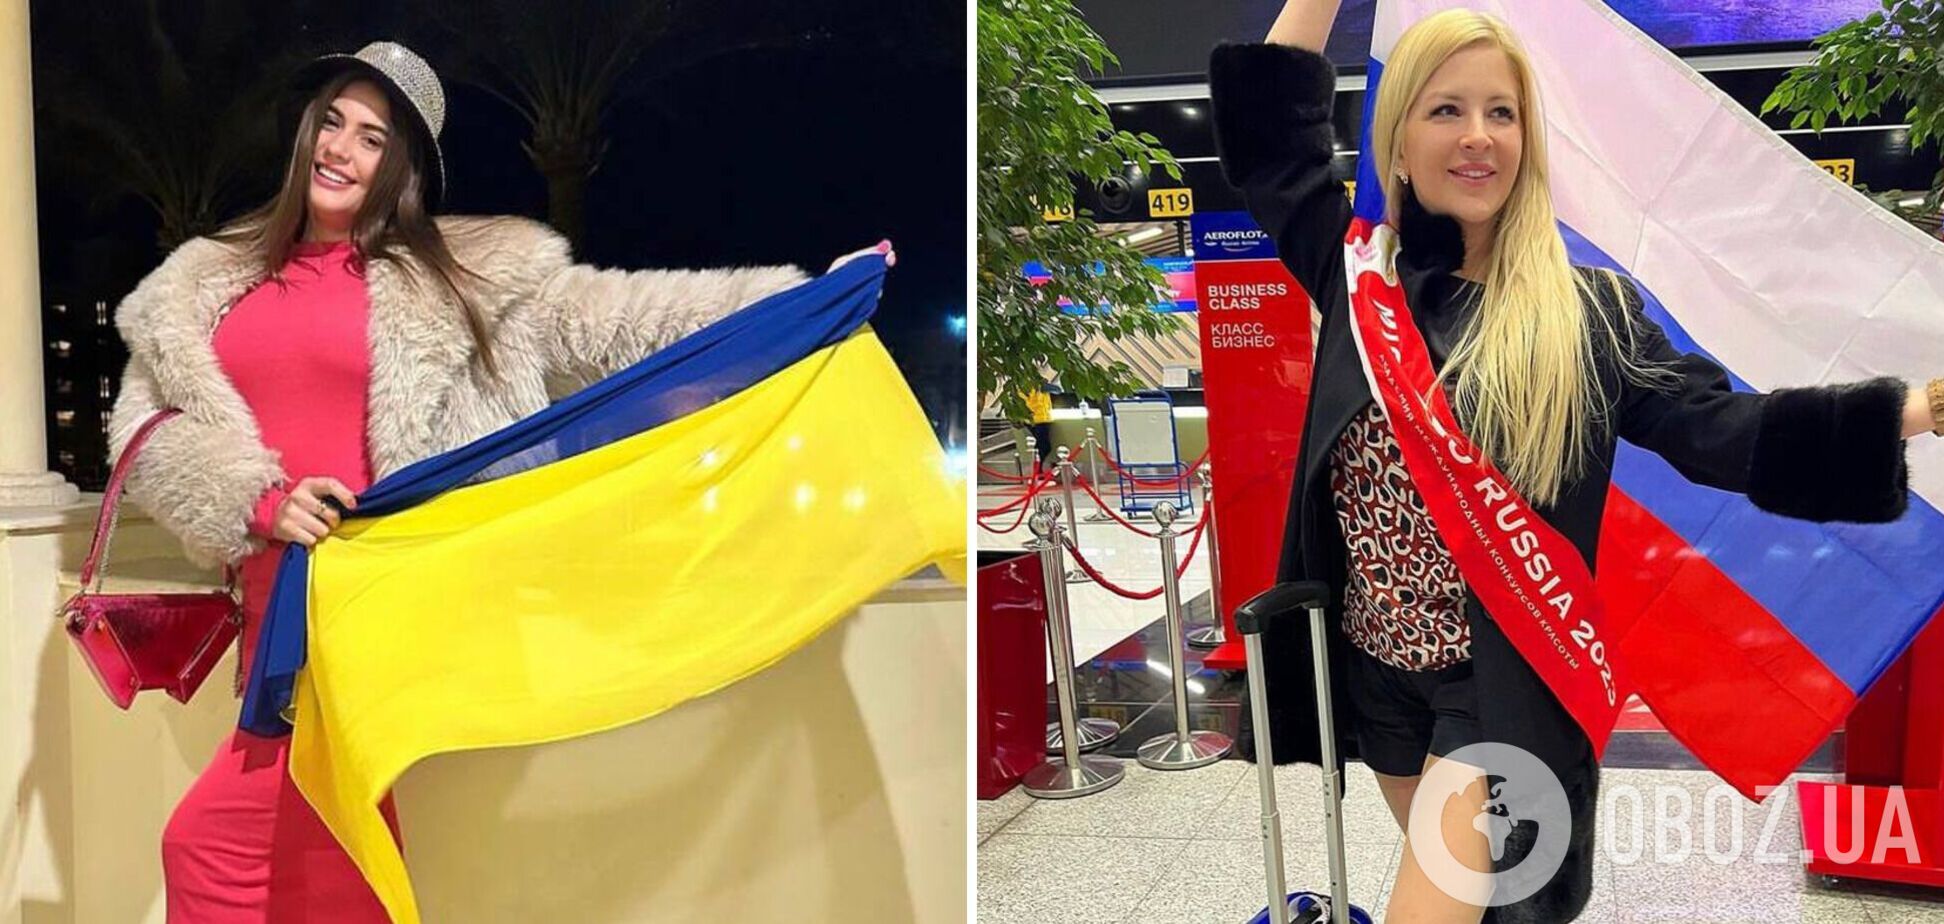 Модель из Украины попала в скандал, сделав фото с россиянкой на 'Miss Eco International' 